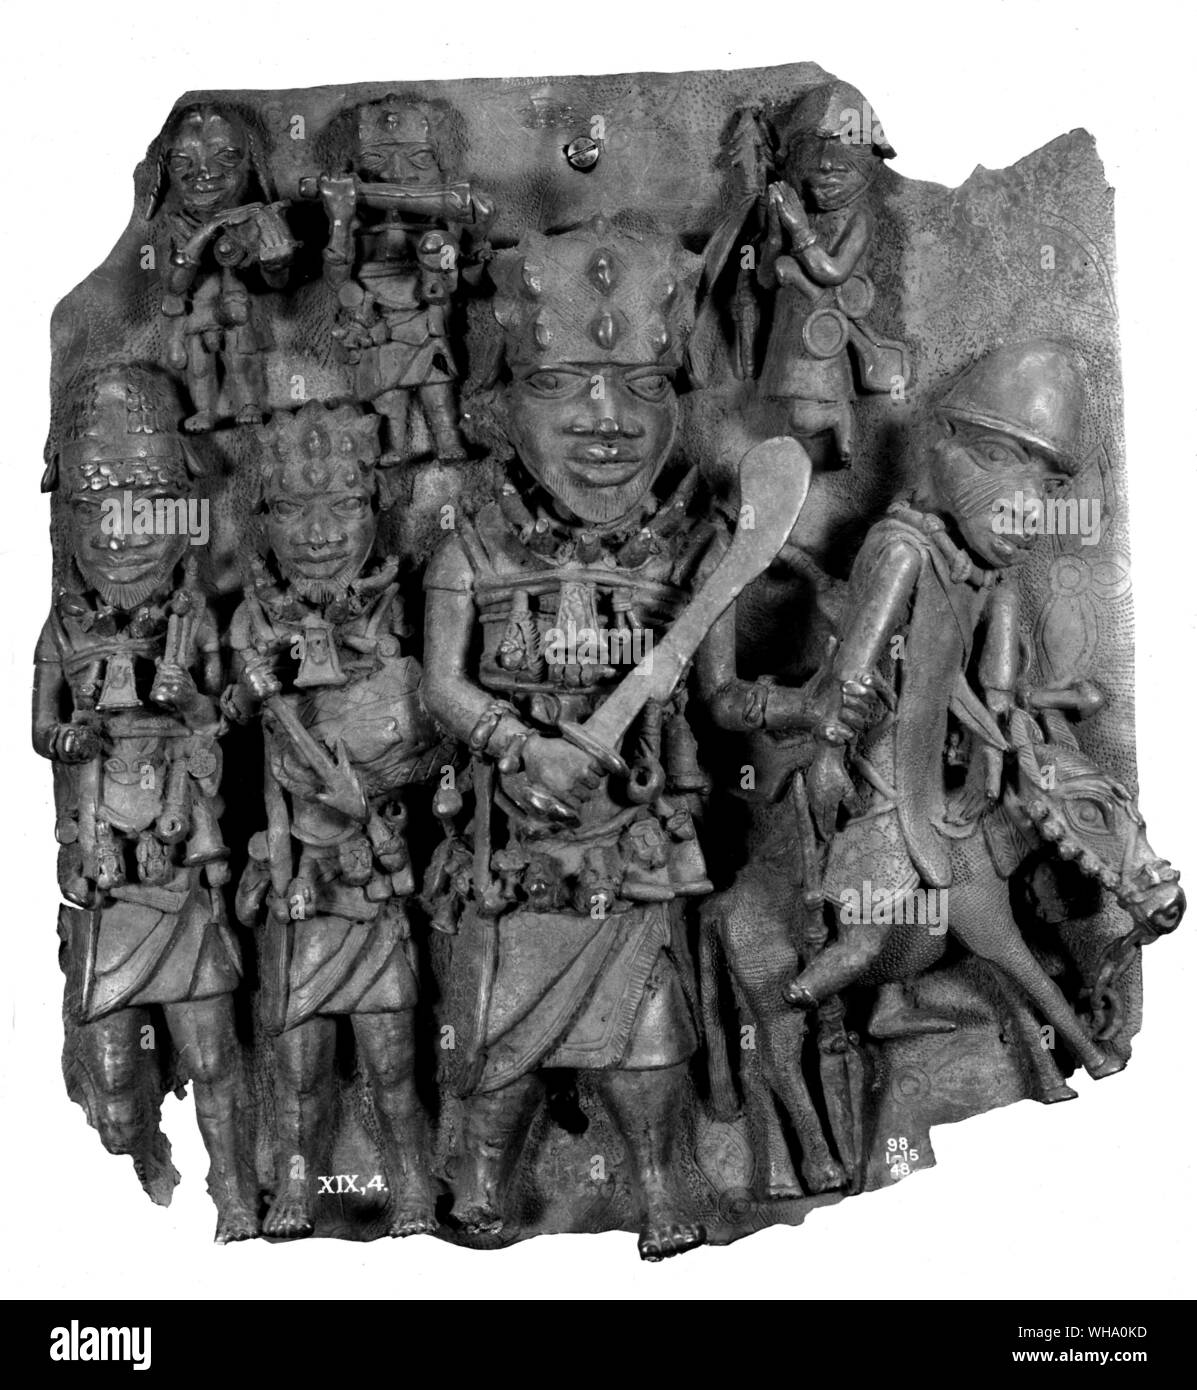 Bini warriors from Benin. Stock Photo